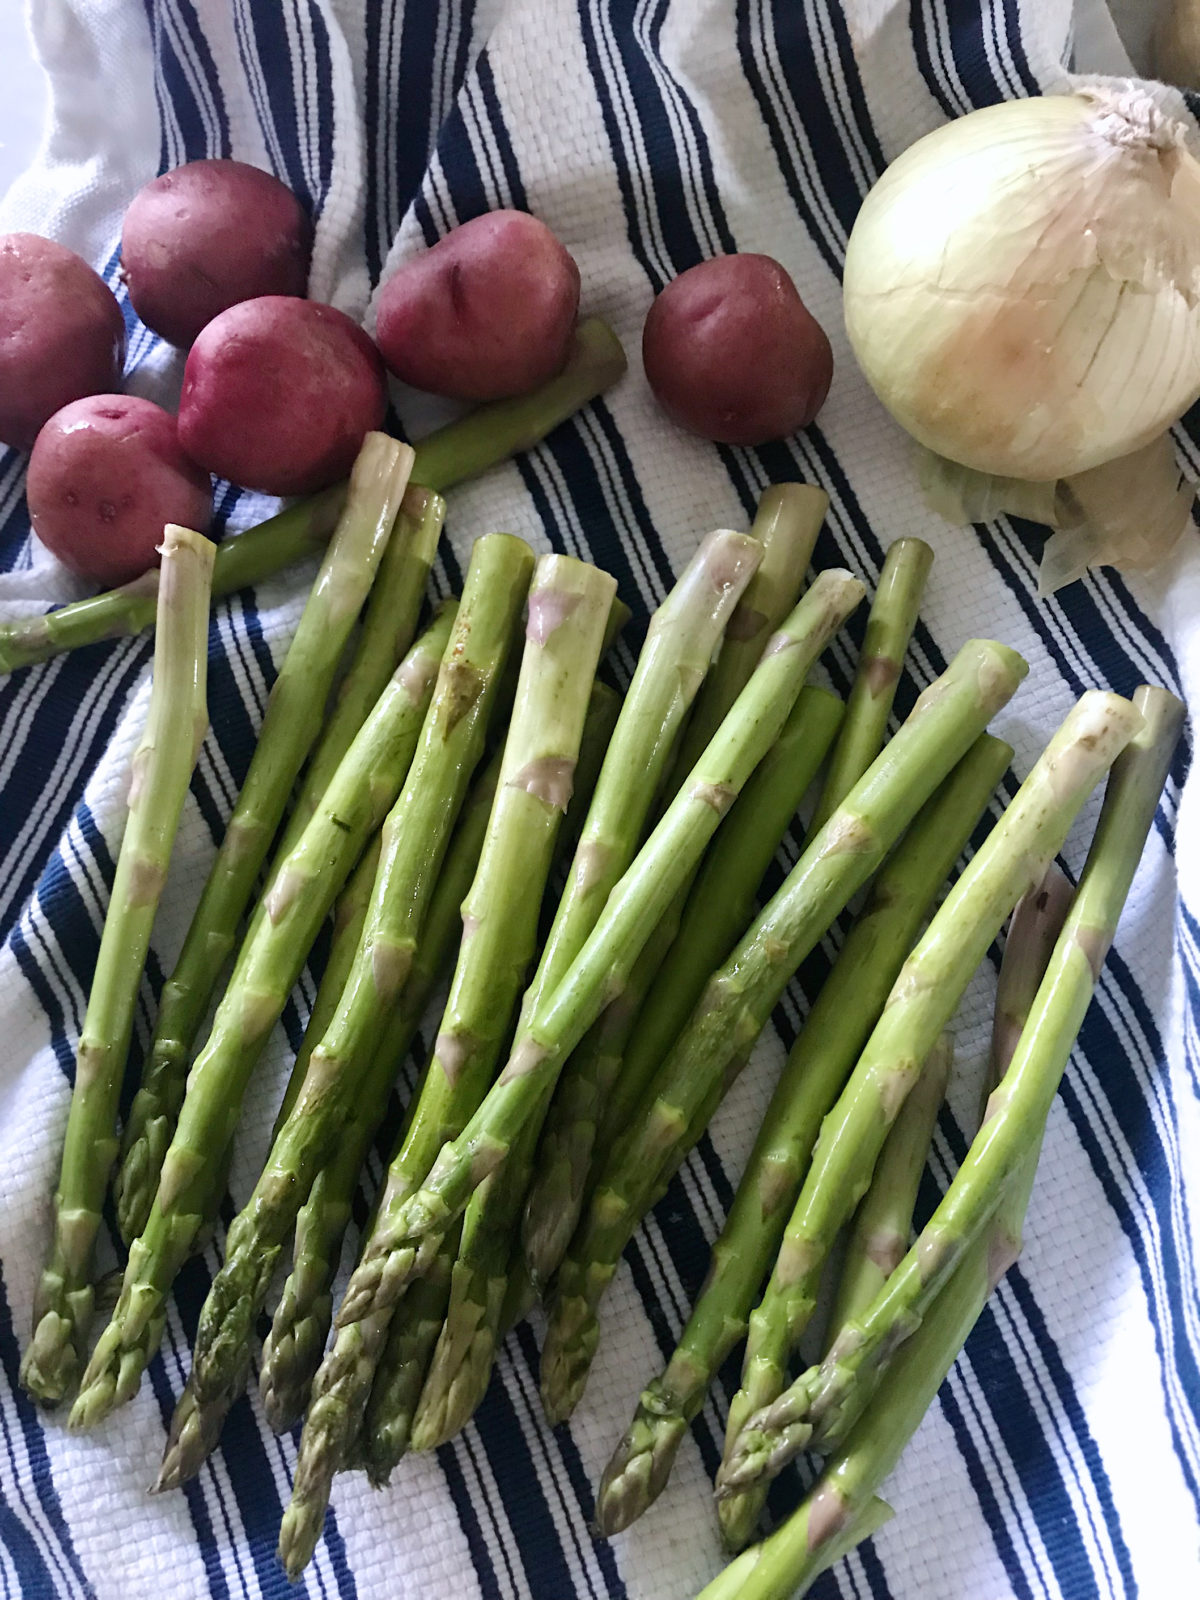 Roasted asparagus